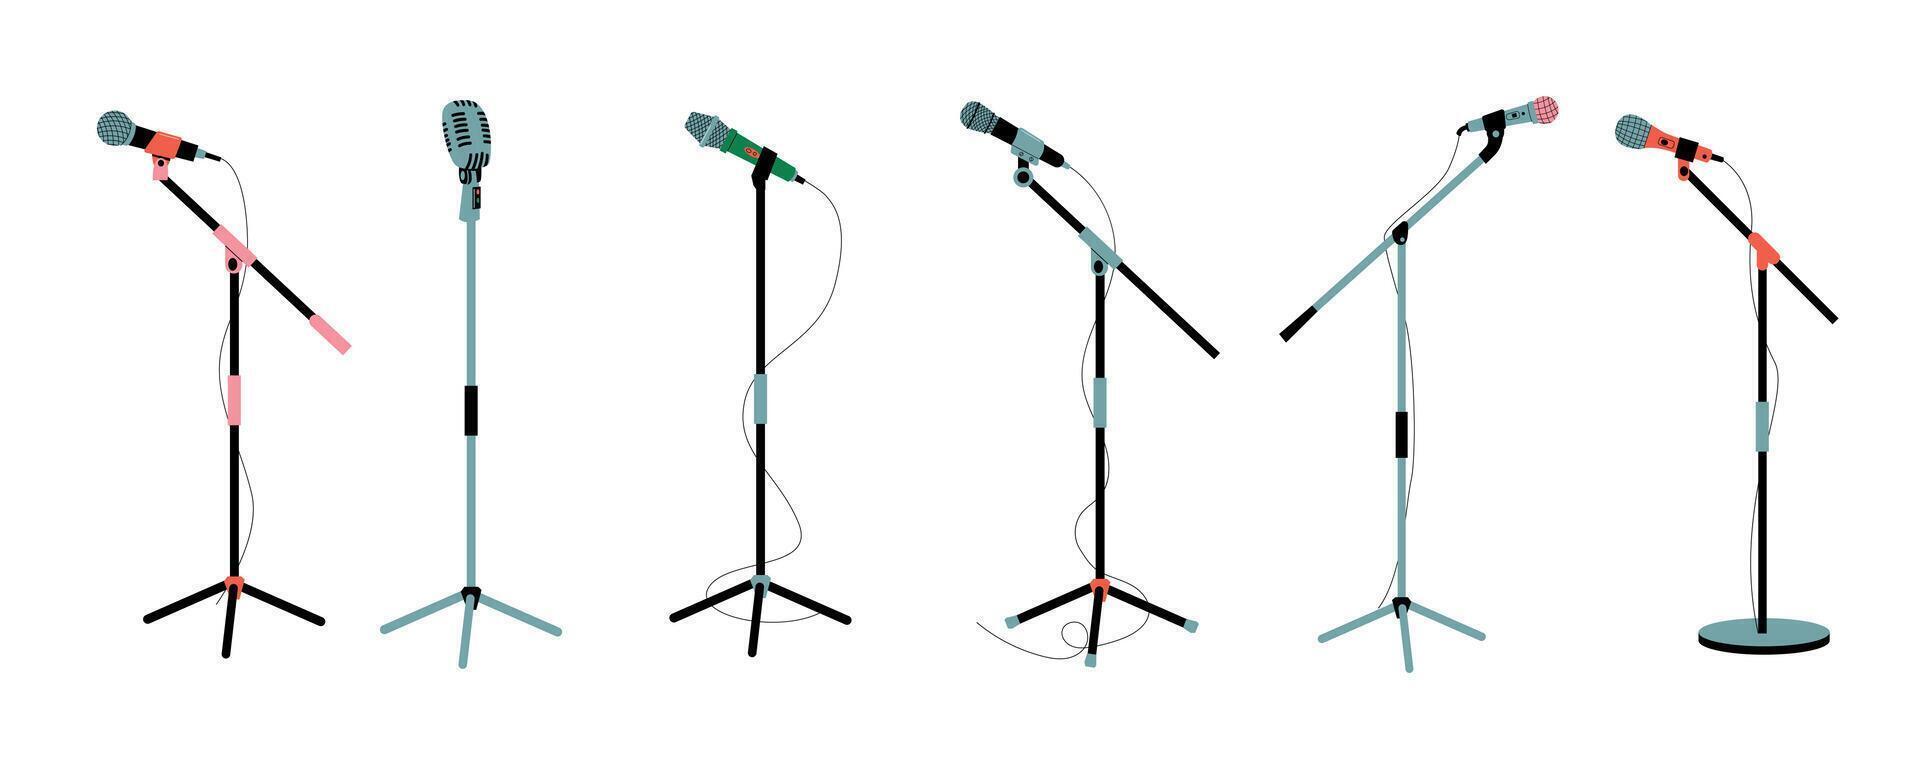 microfoon Aan stellage. mic instrumenten voor concert stadium prestatie, studio interview opnemen, omroep muziek- audio uitrusting tekenfilm vlak stijl. vector geïsoleerd reeks